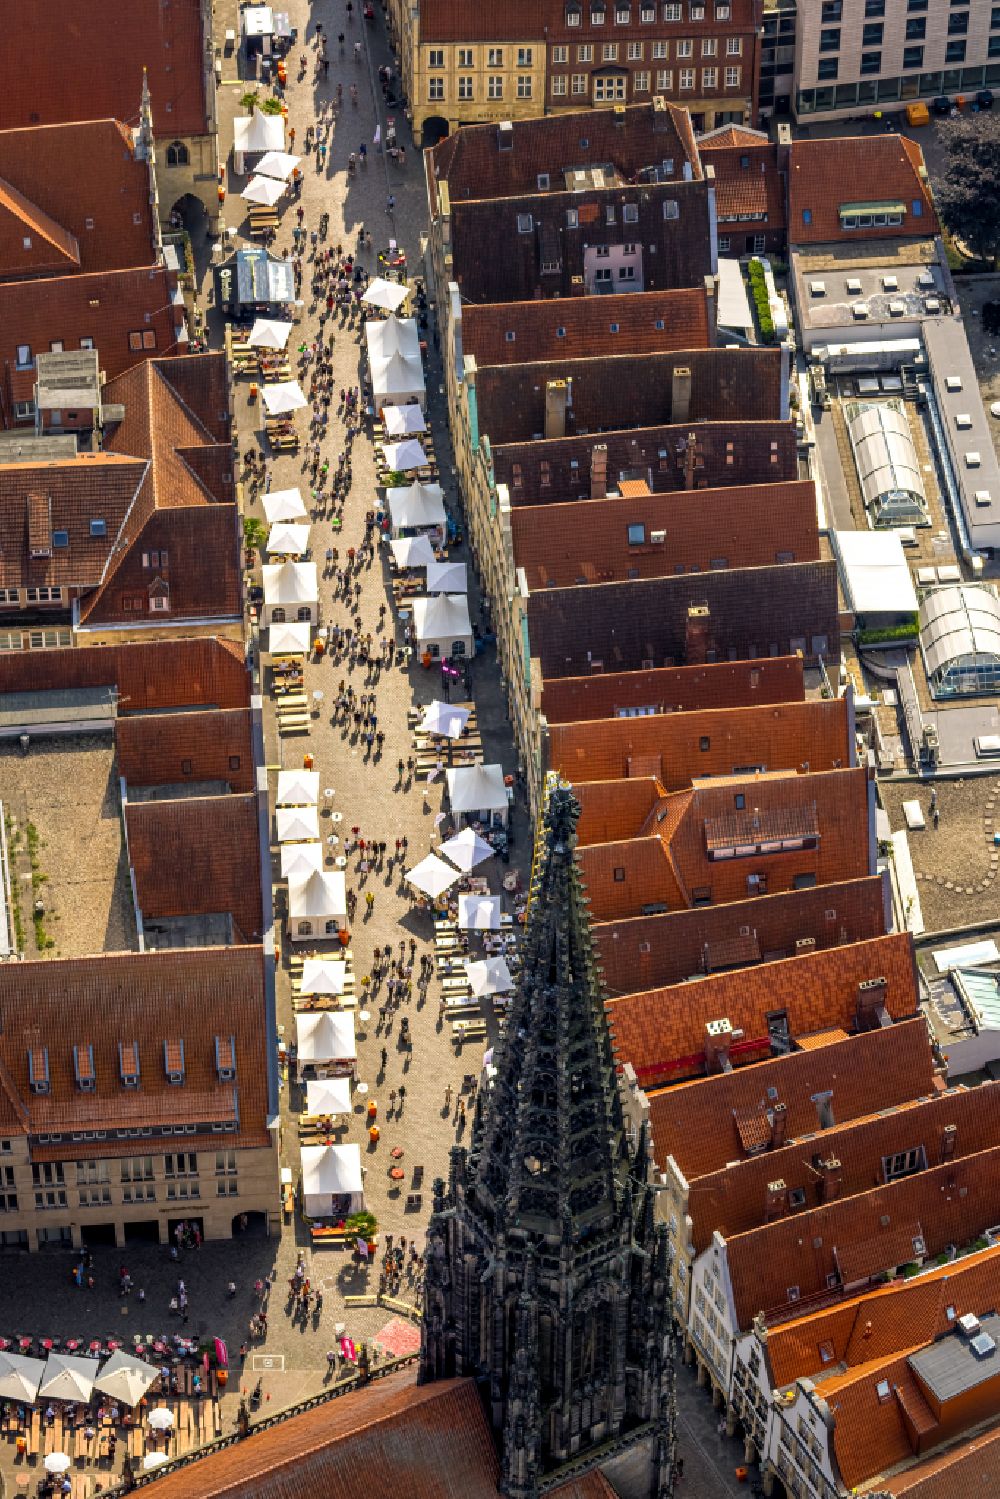 Münster von oben - Straßenführung der Flaniermeile Prinzipalmarkt in Münster im Bundesland Nordrhein-Westfalen, Deutschland